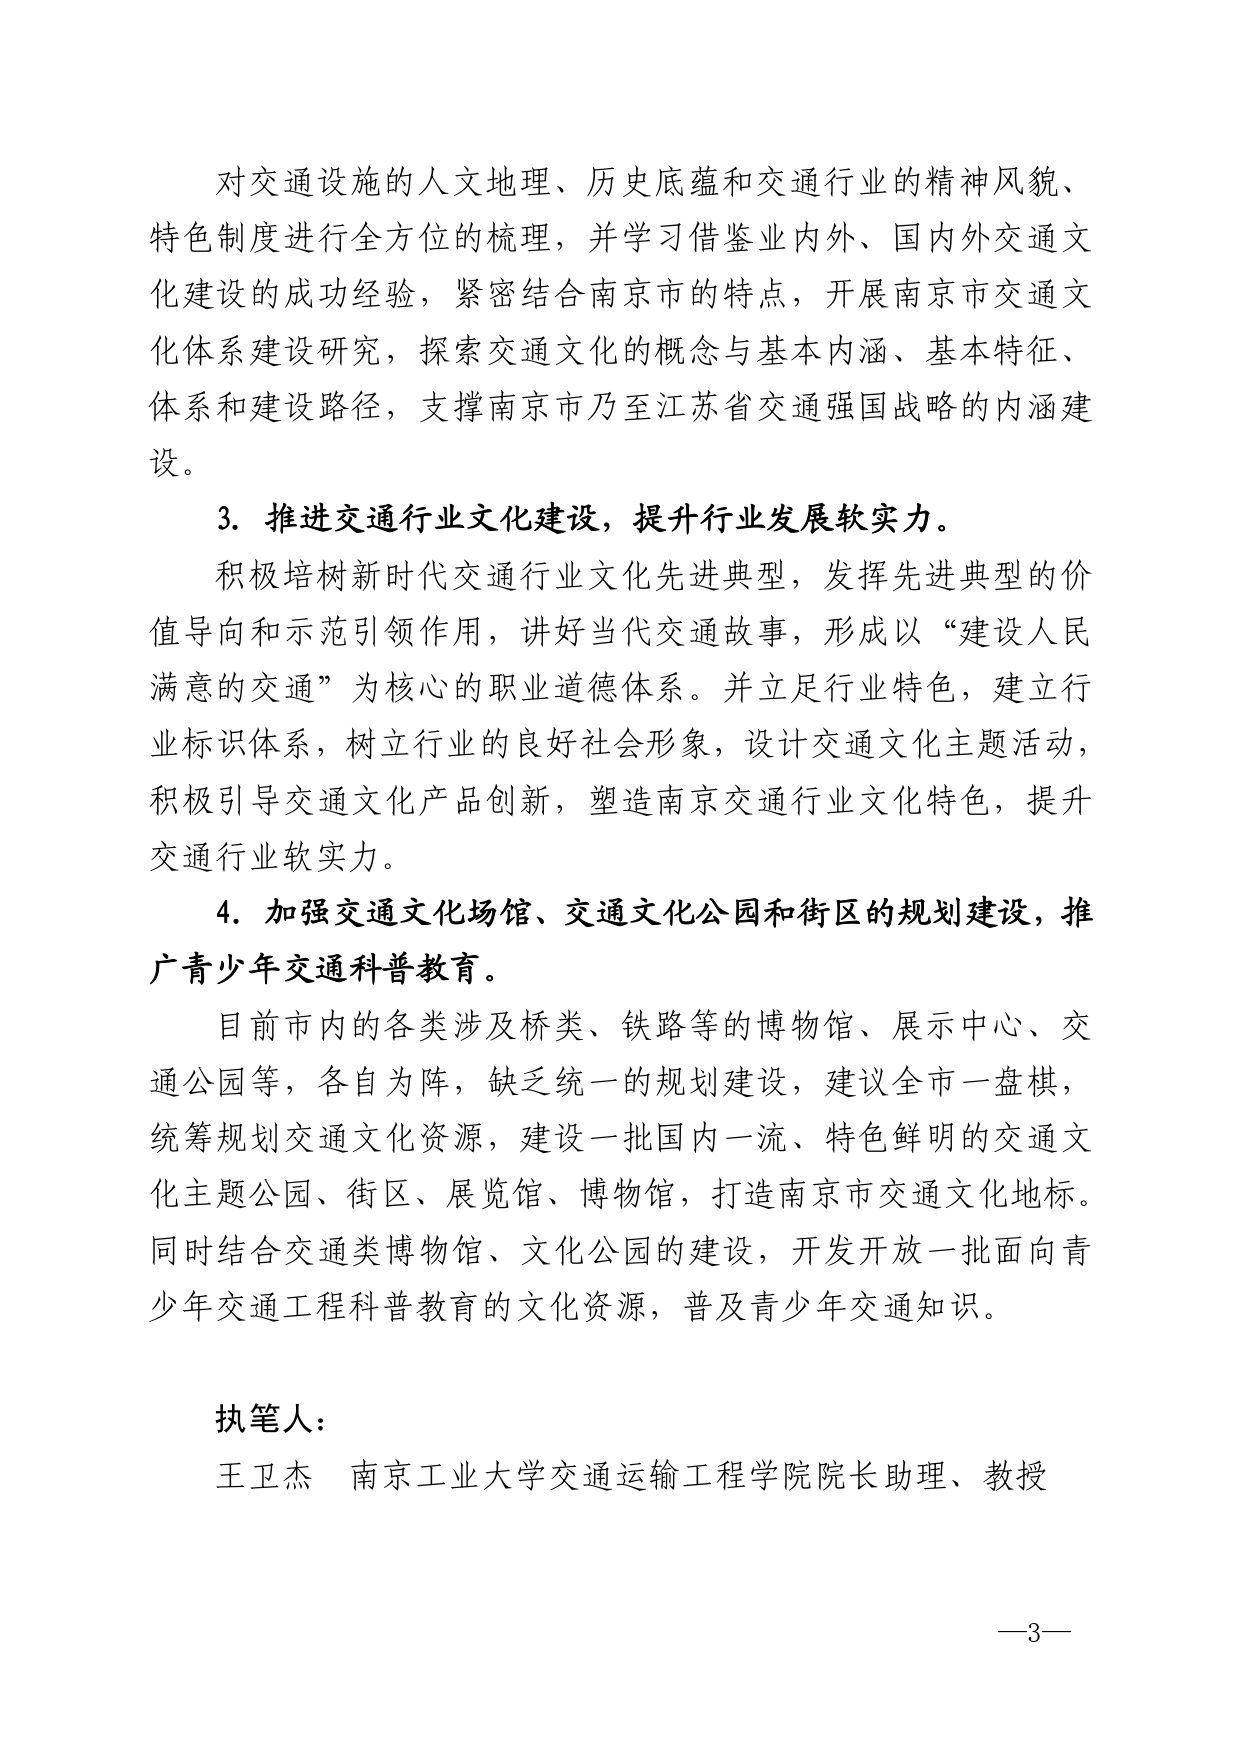 2020年第4期（关于建设南京市交通文化之都的建议）_page-0003.jpg